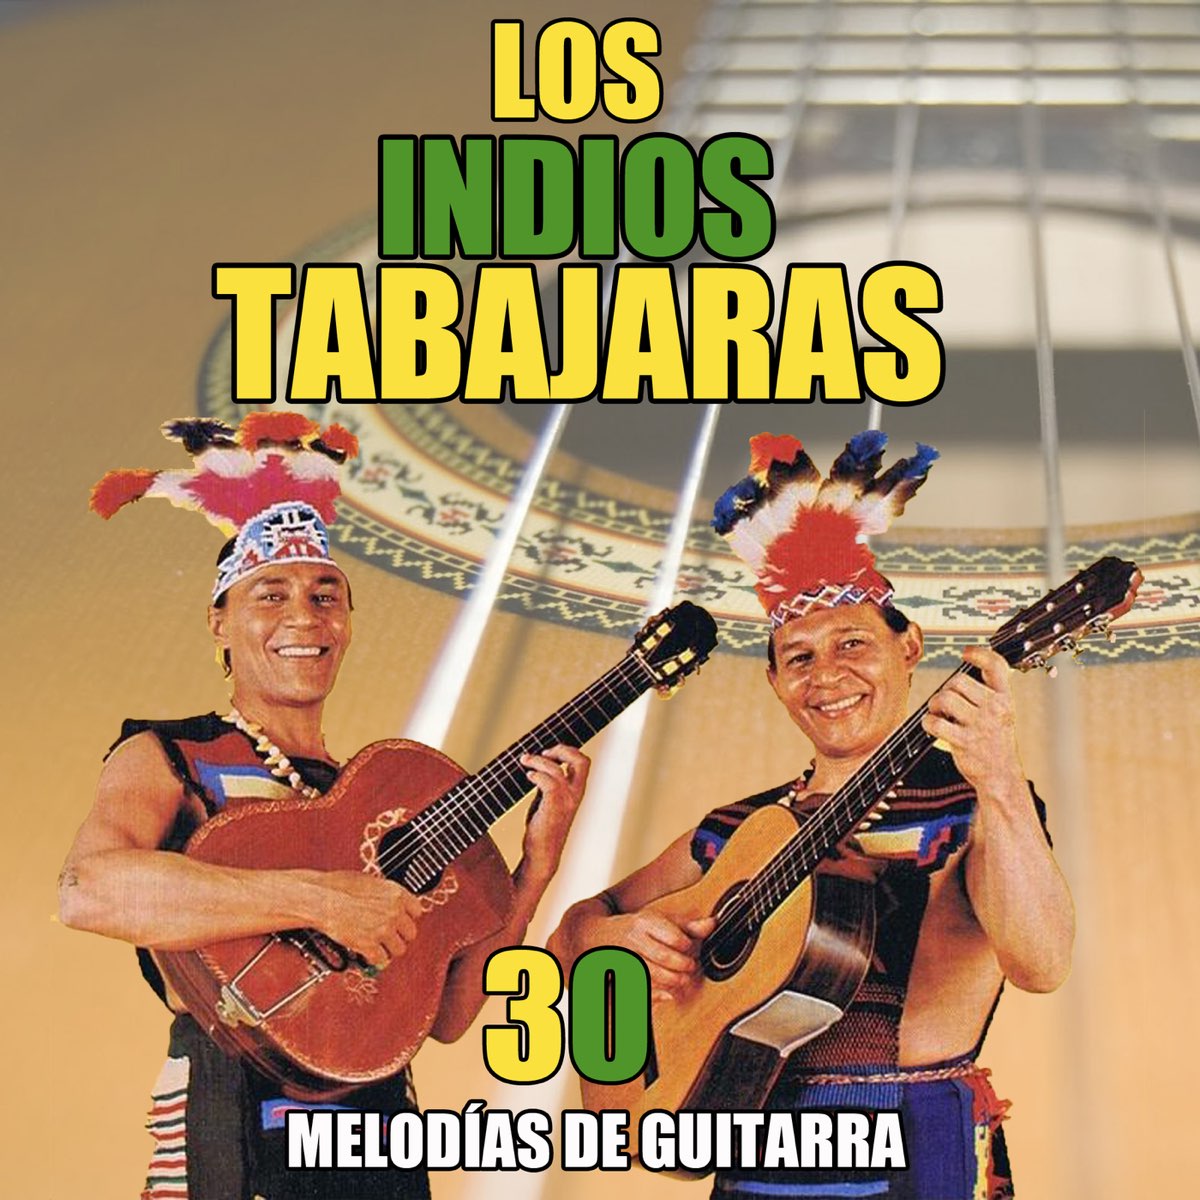 30 Melodías De Guitarra - Album by Los Indios Tabajaras - Apple Music